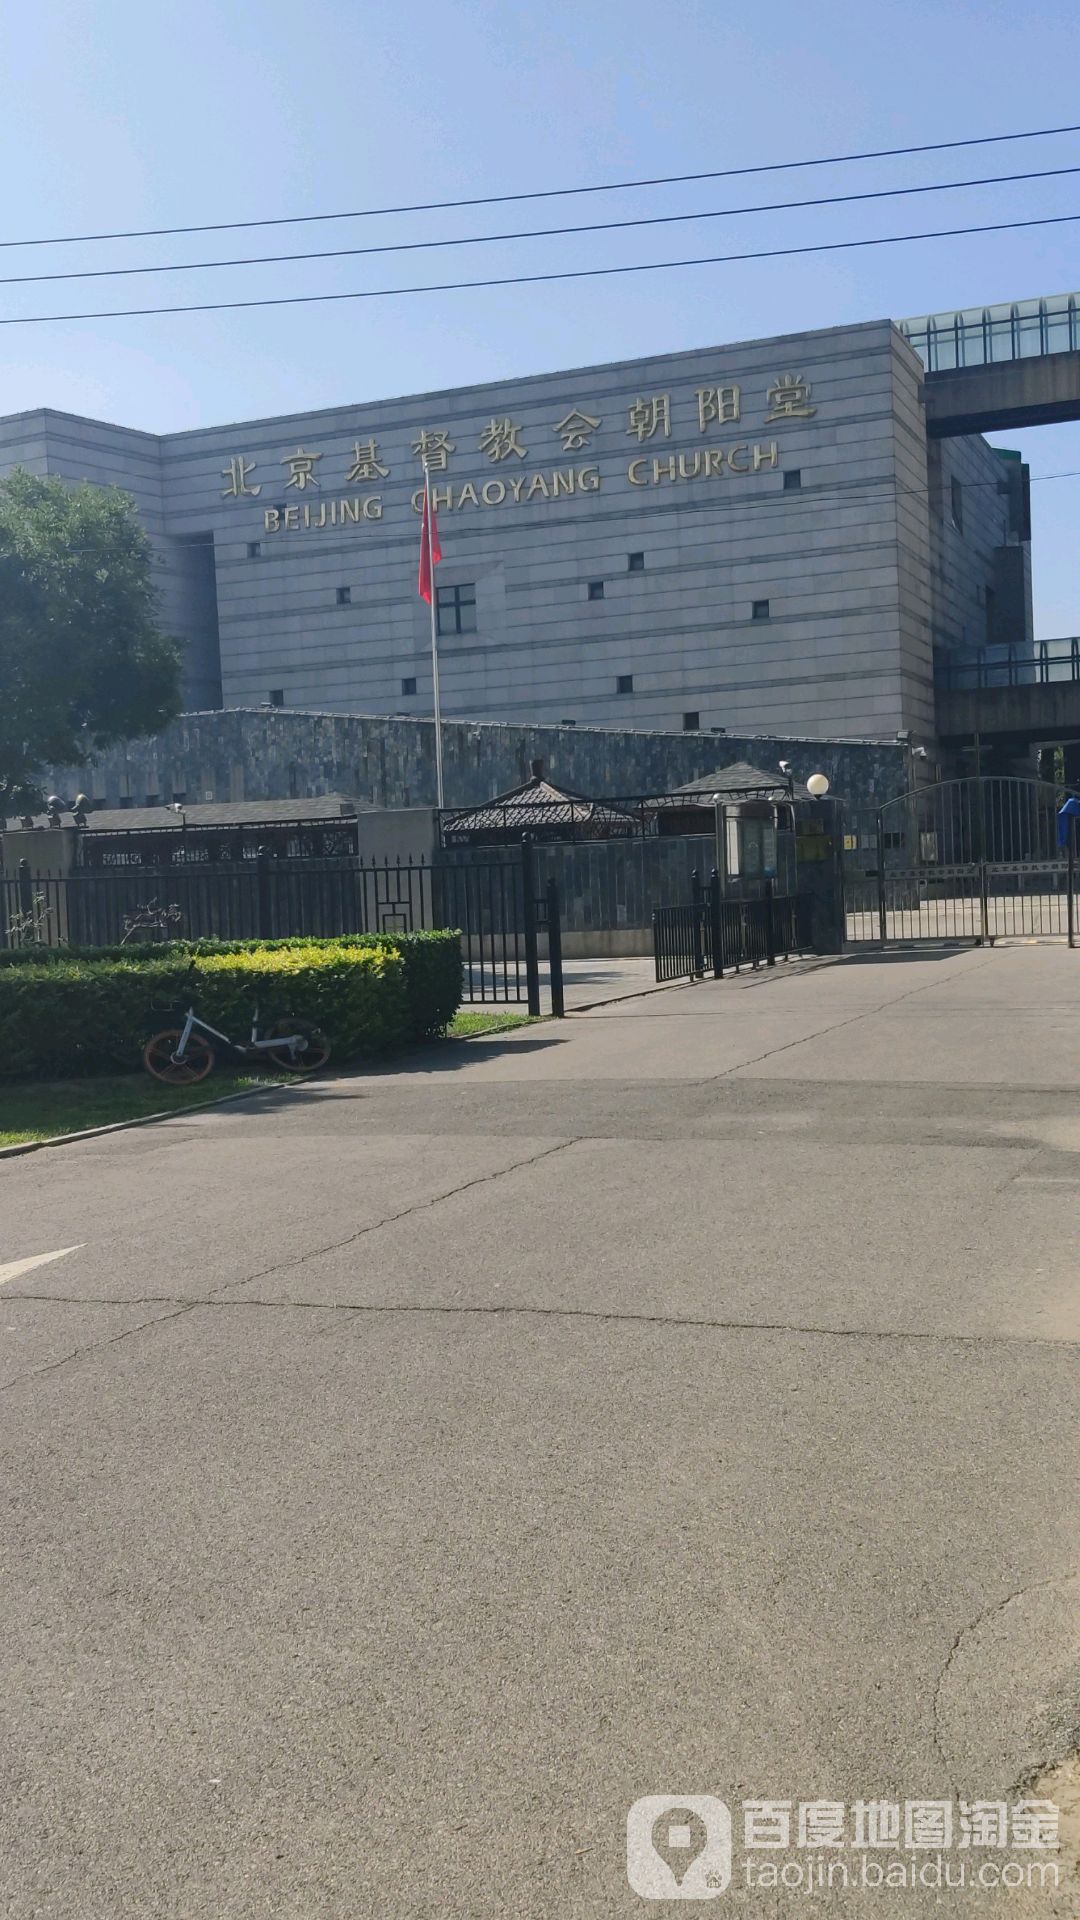 北京基督教会朝阳堂